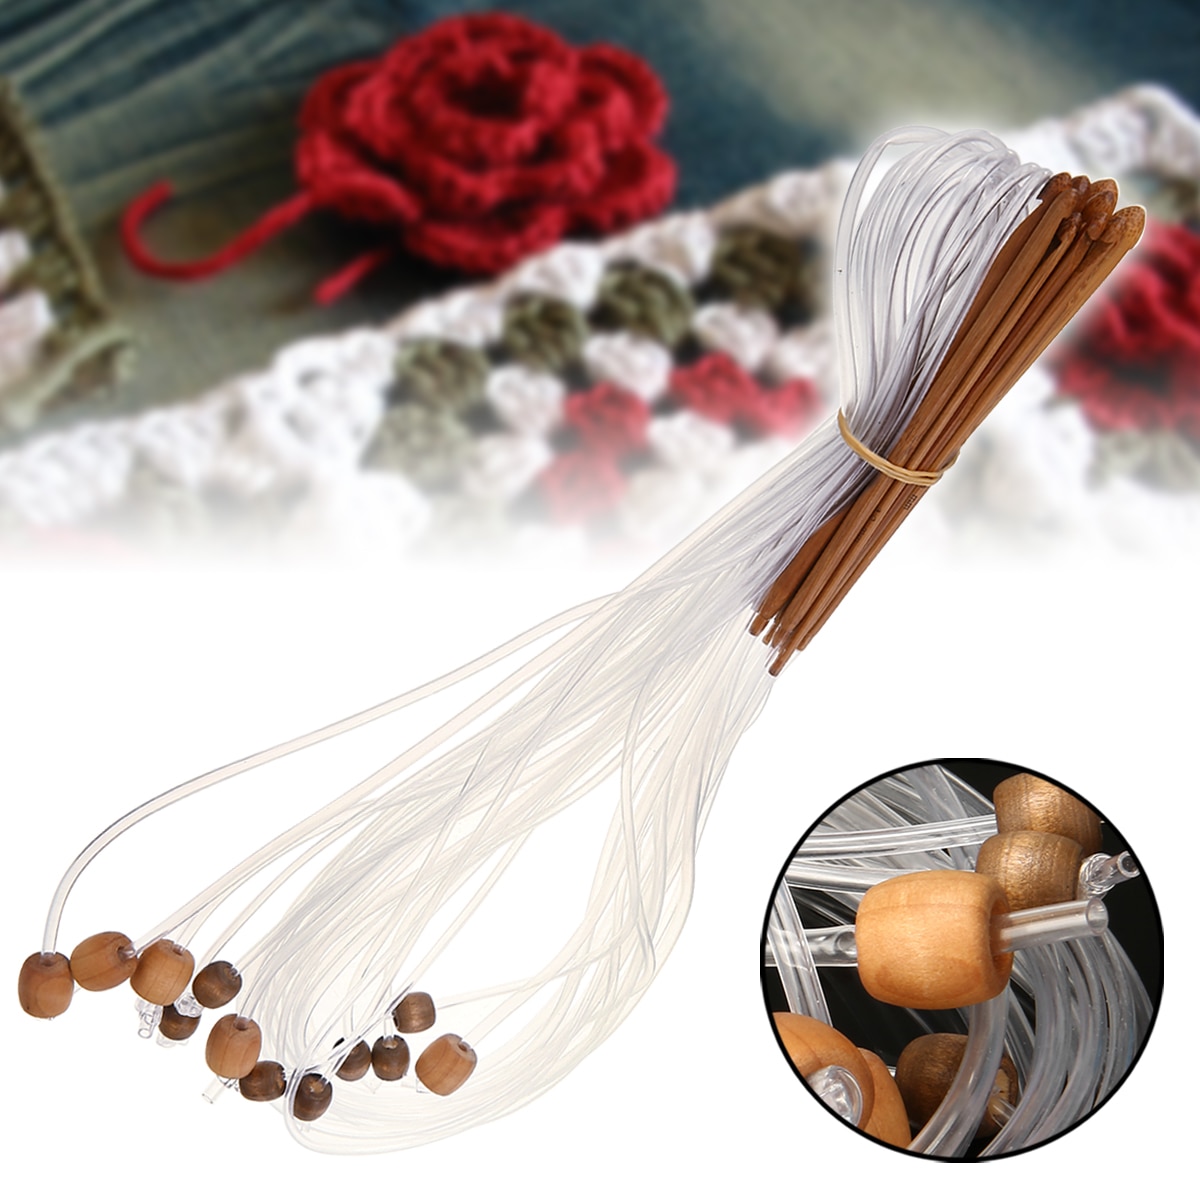 12PCS DIY Bamboo Haak Steek Haak Lange Tunesische Haaknaalden Breinaalden Weave Craft Tool met Houten Kraal Set